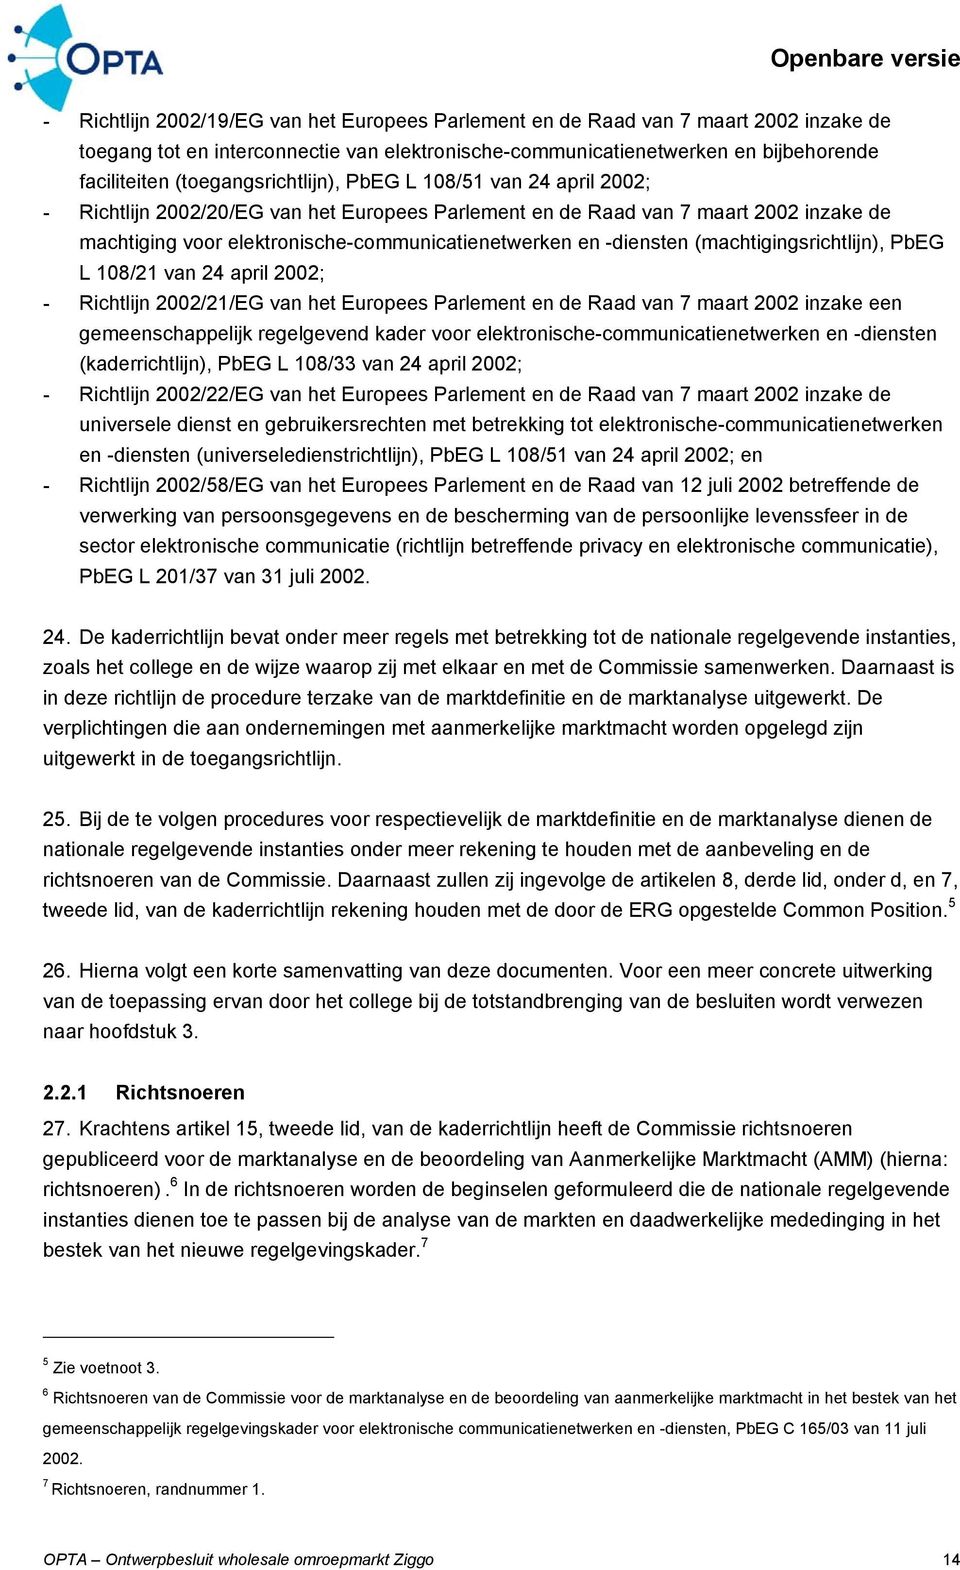 -diensten (machtigingsrichtlijn), PbEG L 108/21 van 24 april 2002; - Richtlijn 2002/21/EG van het Europees Parlement en de Raad van 7 maart 2002 inzake een gemeenschappelijk regelgevend kader voor